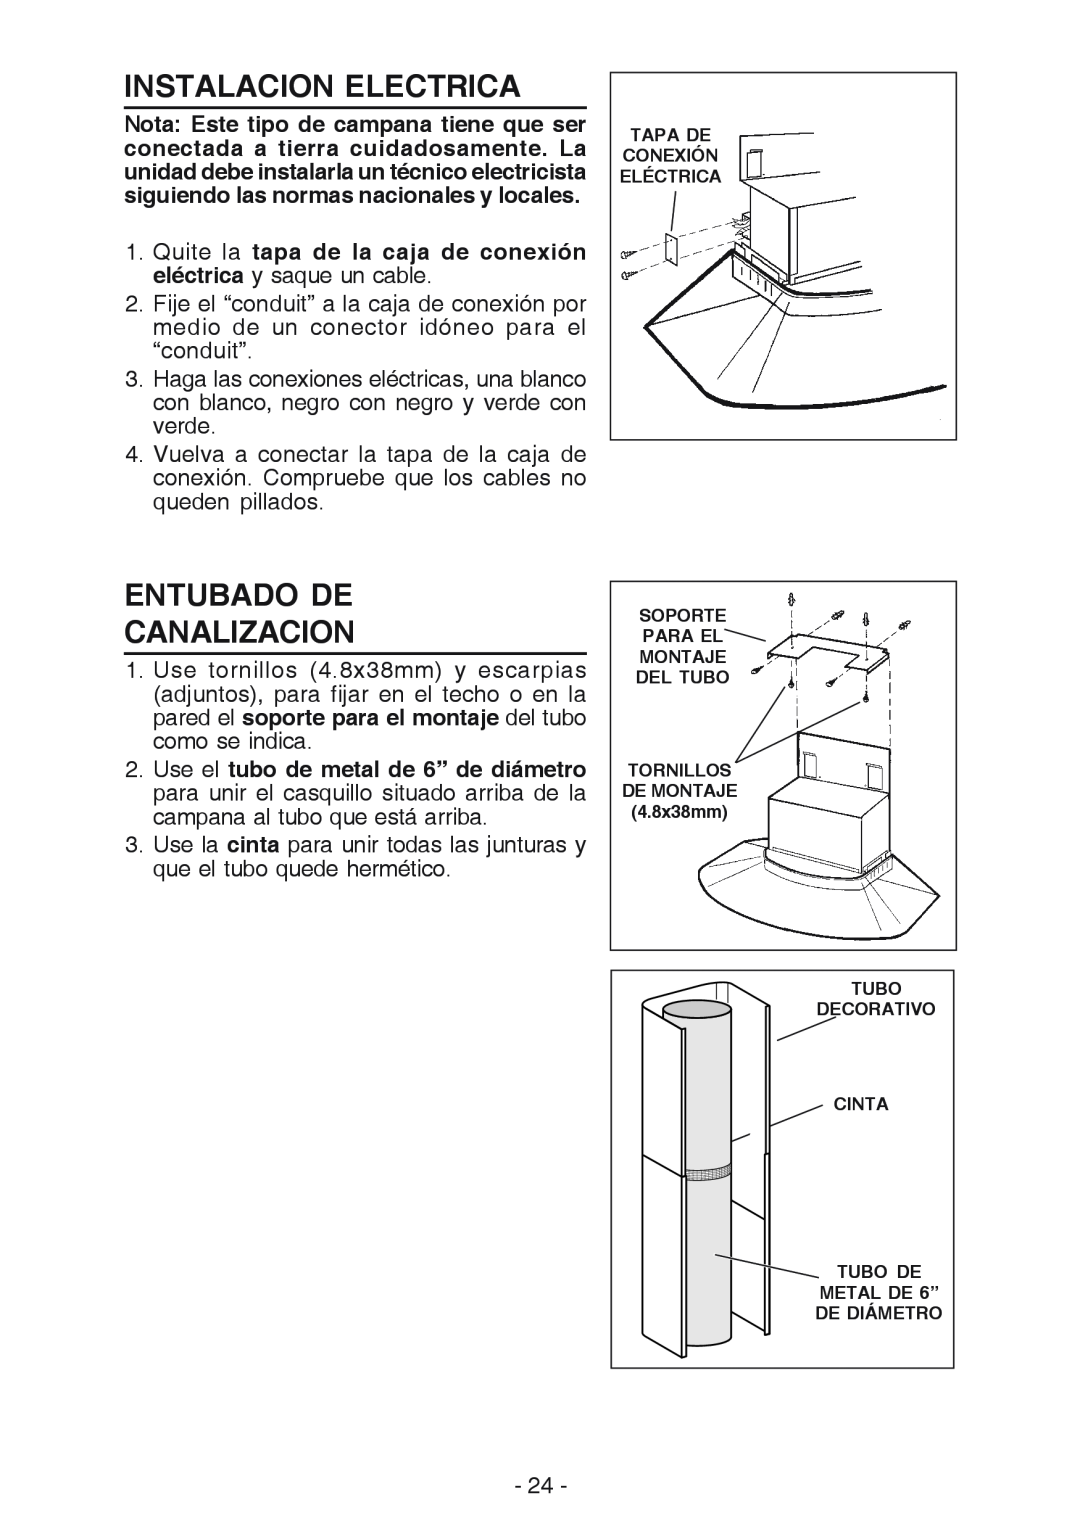 NuTone NP629004 manual Instalacion Electrica, Entubado De Canalizacion 